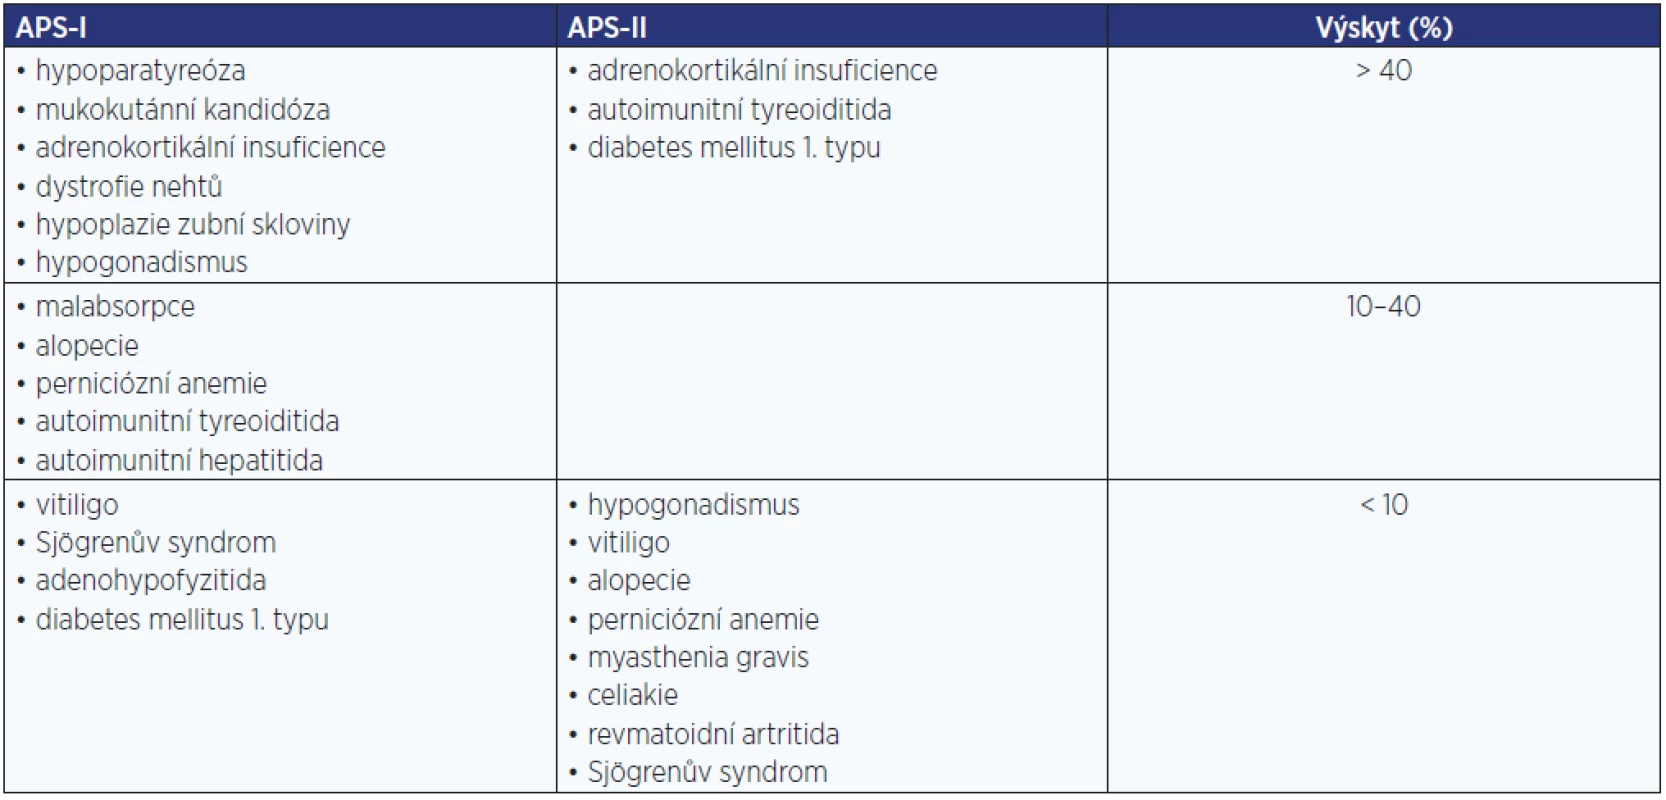 Autoimunitní polyglandulární syndromy (APS)